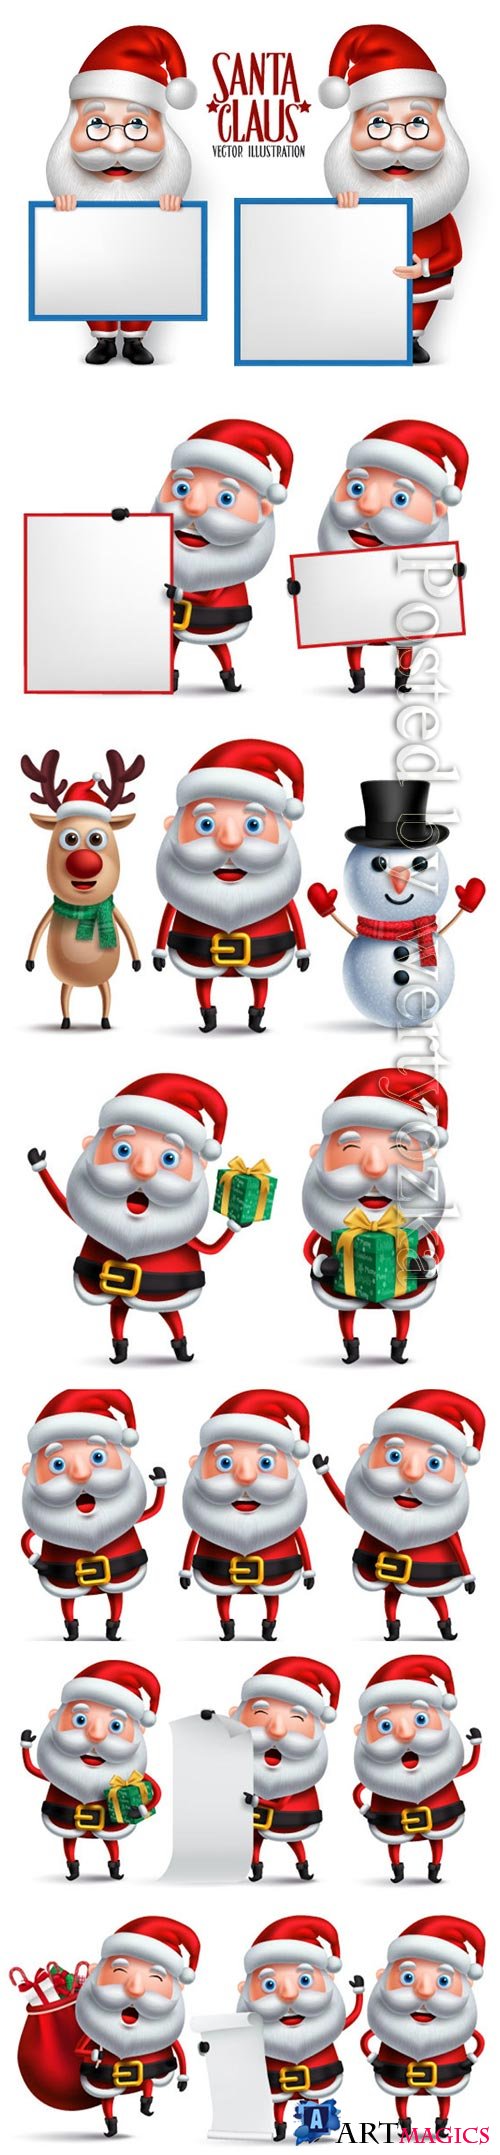 Santa claus christmas character set